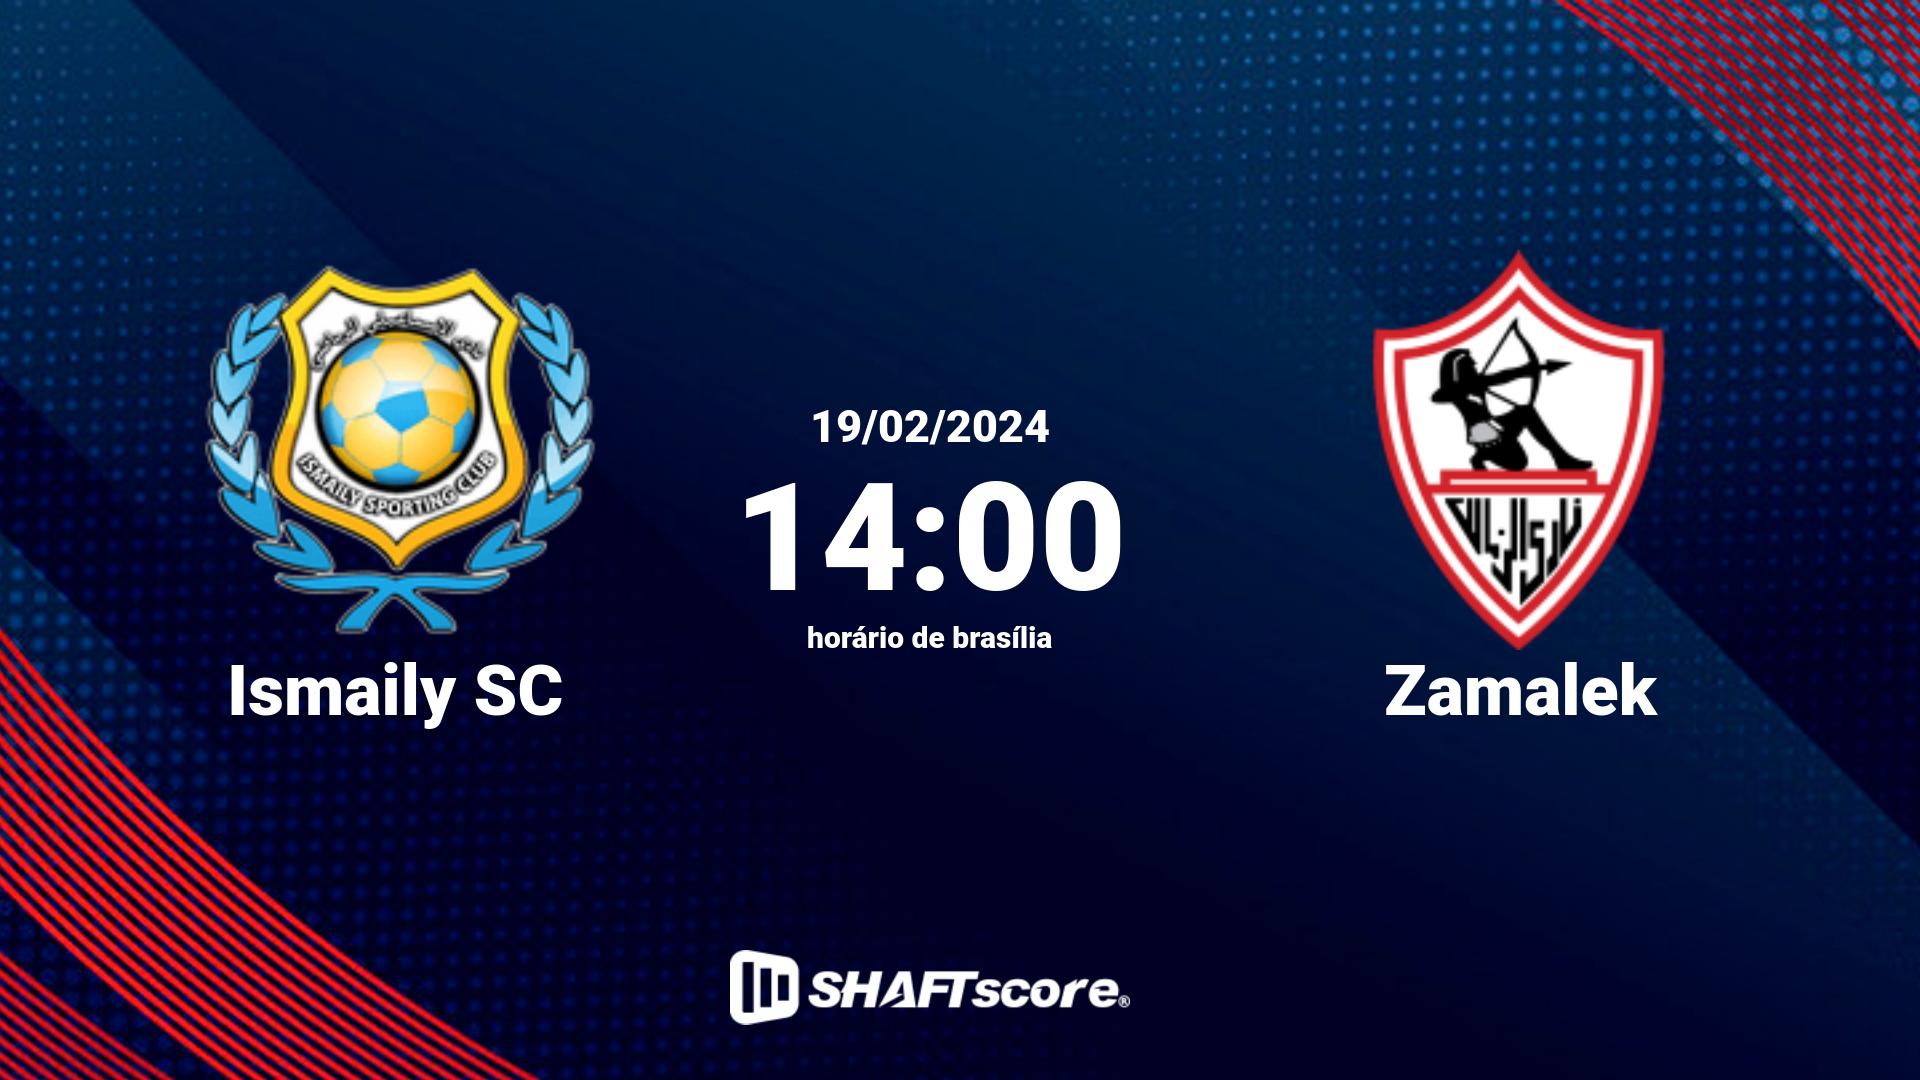 Estatísticas do jogo Ismaily SC vs Zamalek 19.02 14:00